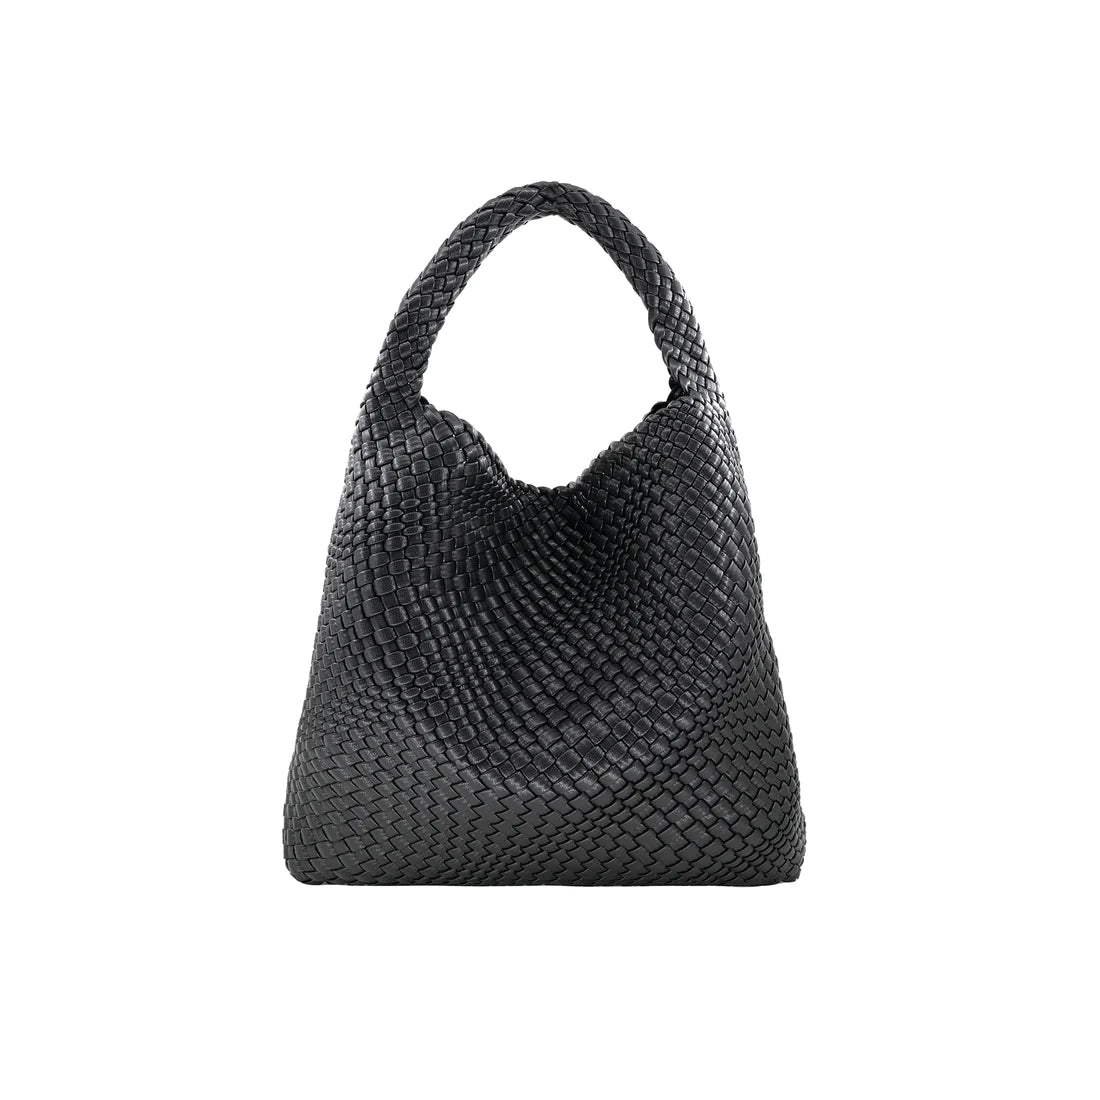 Woven Medium Black Handbag